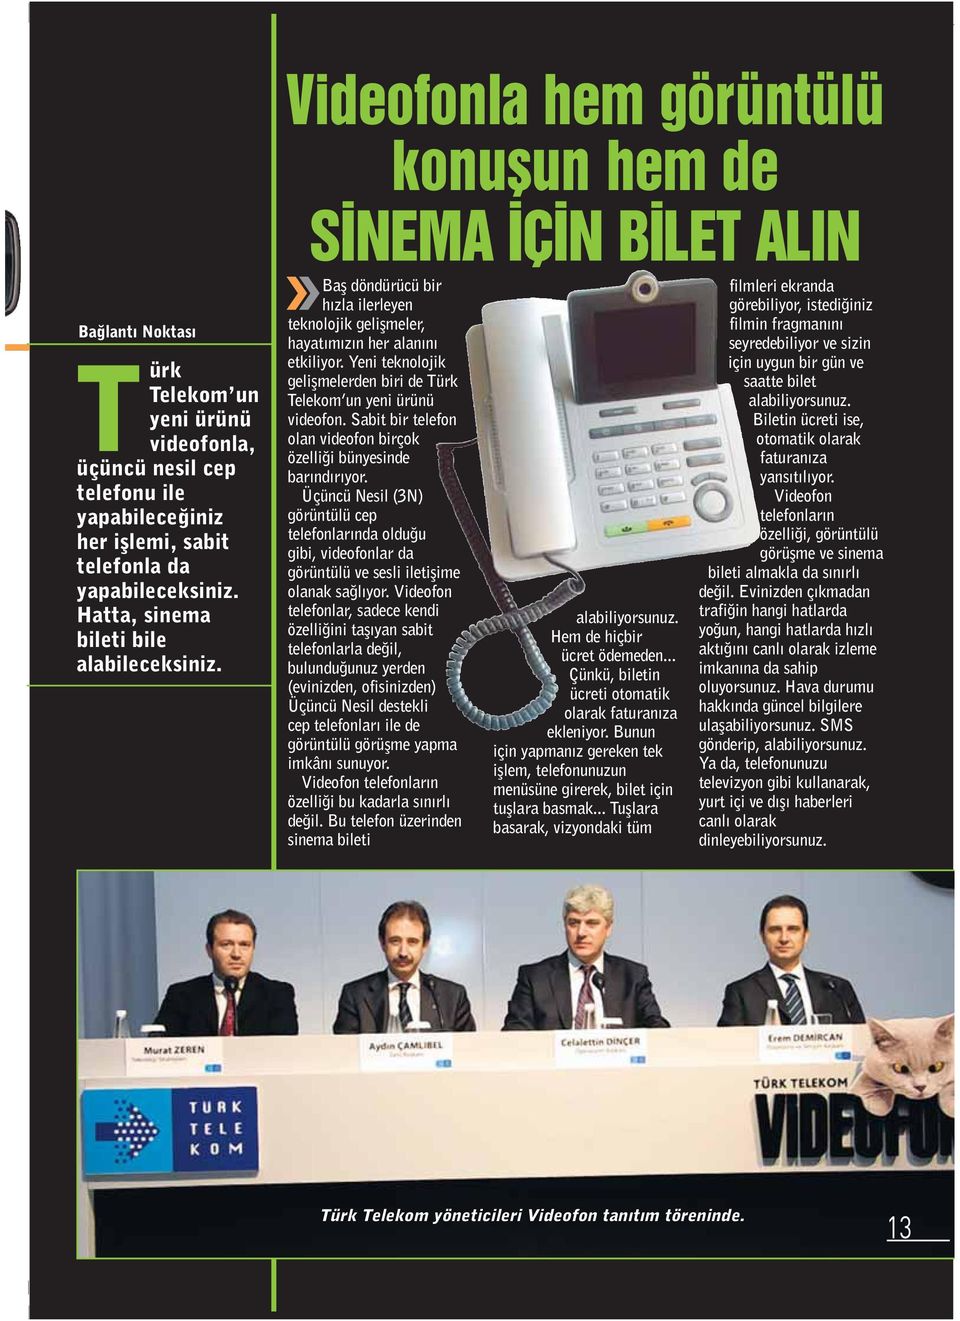 Yeni teknolojik geliflmelerden biri de Türk Telekom un yeni ürünü videofon. Sabit bir telefon olan videofon birçok özelli i bünyesinde bar nd r yor.